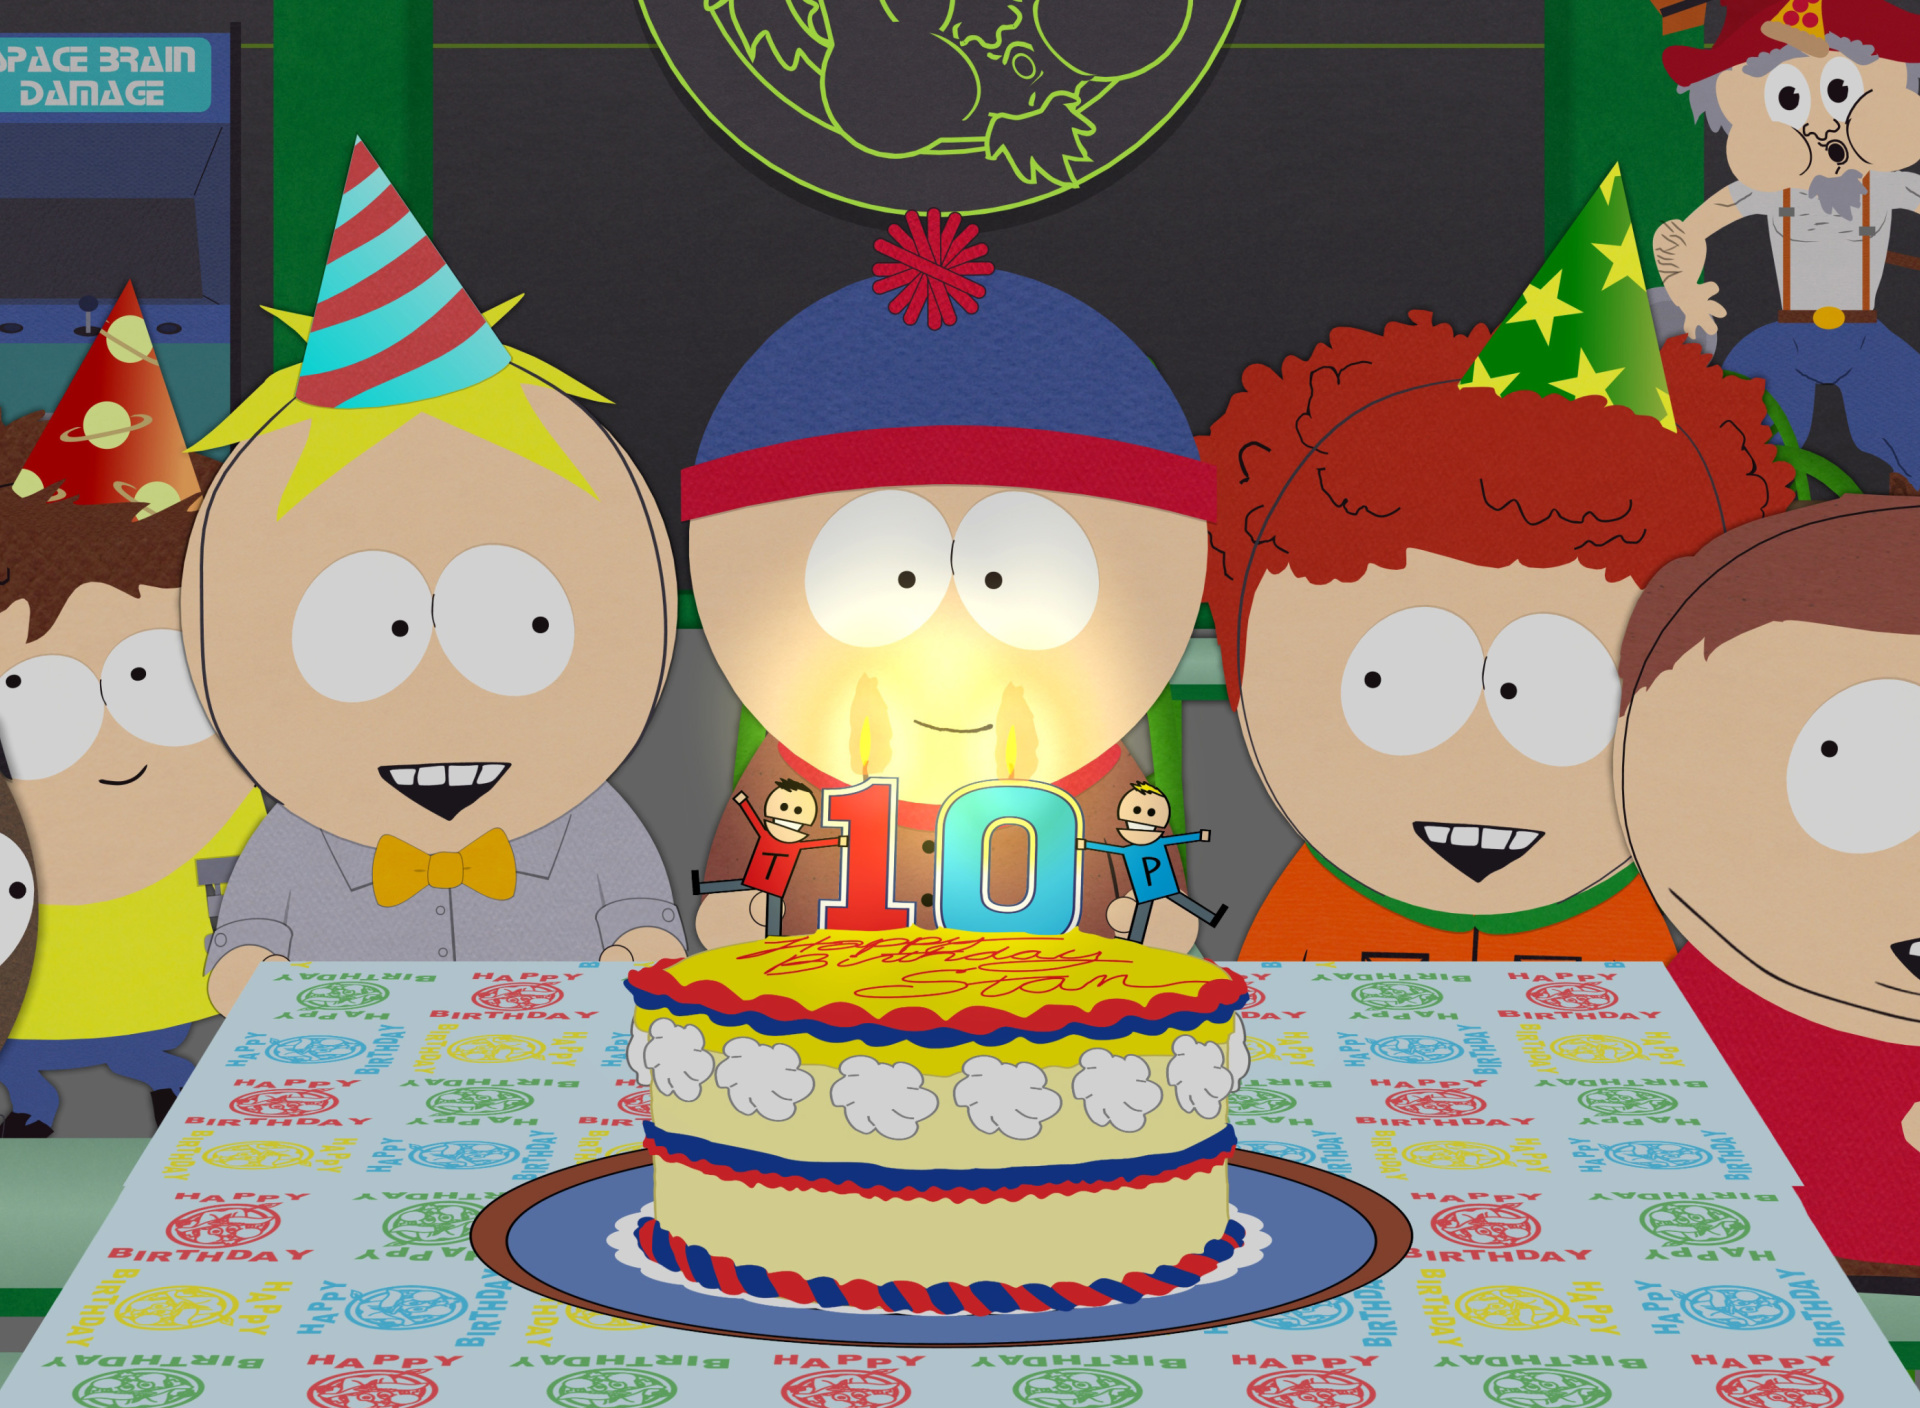 Das South Park Season 15 Stans Party Wallpaper 1920x1408